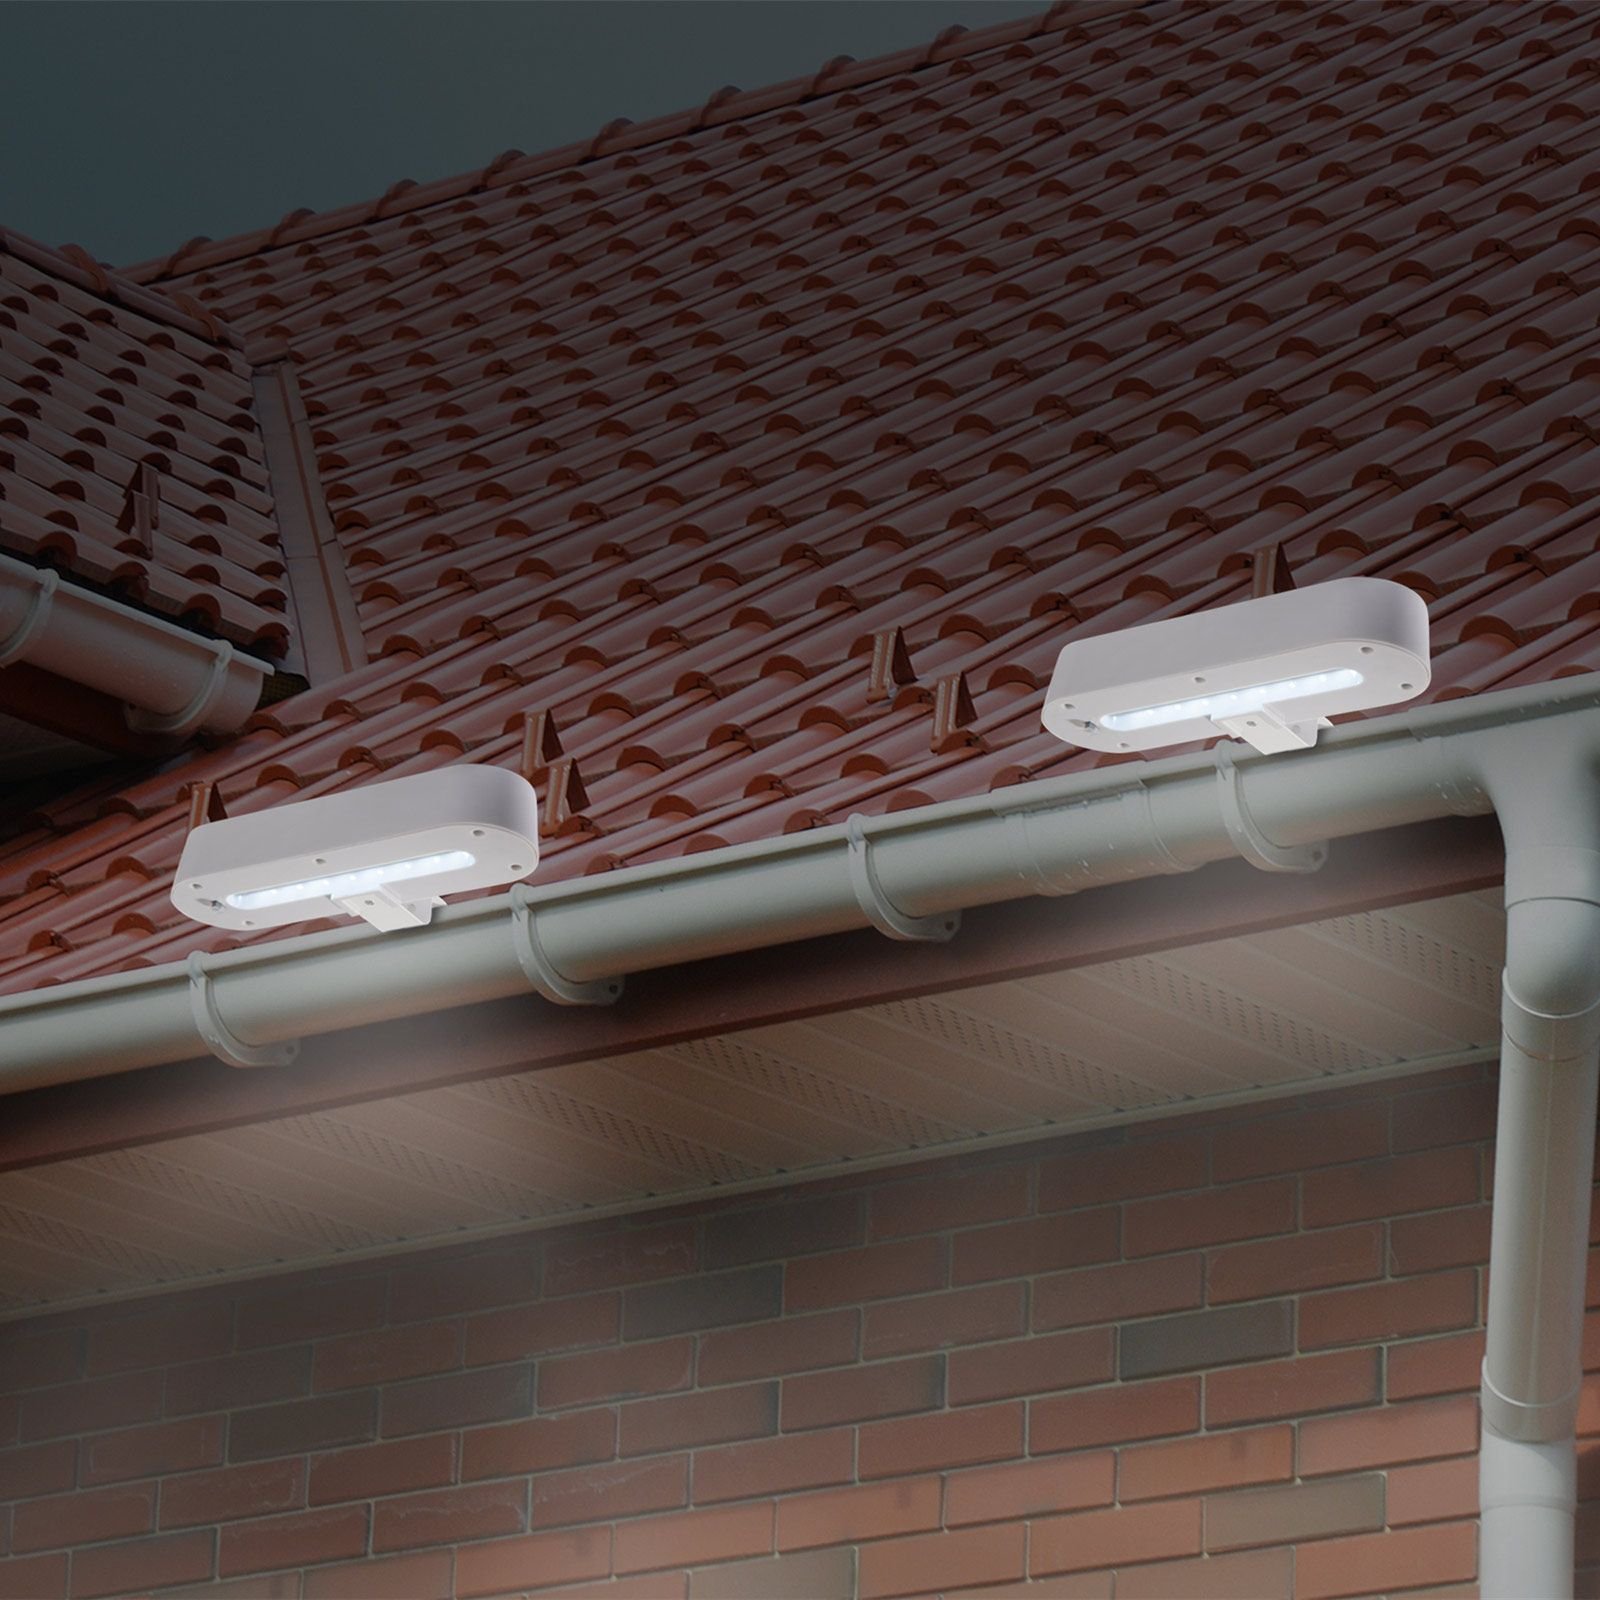 Lampa do rynny dachowej LED solar, zestaw 2 szt.